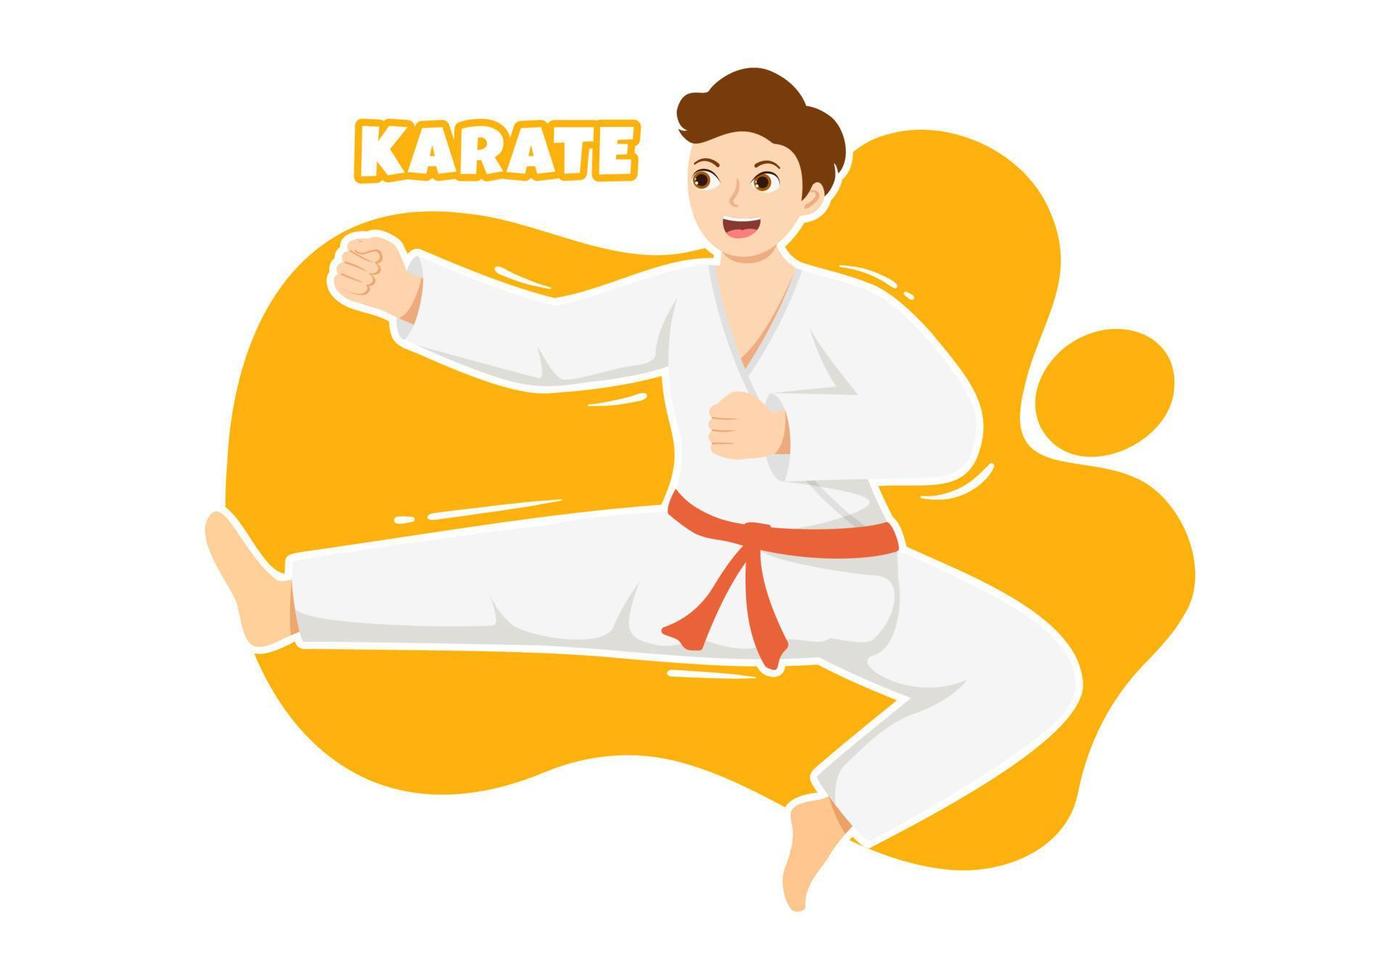 kinder, die einige grundlegende karate-kampfkunstbewegungen machen, posen kämpfen und kimono in karikaturhand tragen, die für die illustration von landingpage-vorlagen gezeichnet wurden vektor